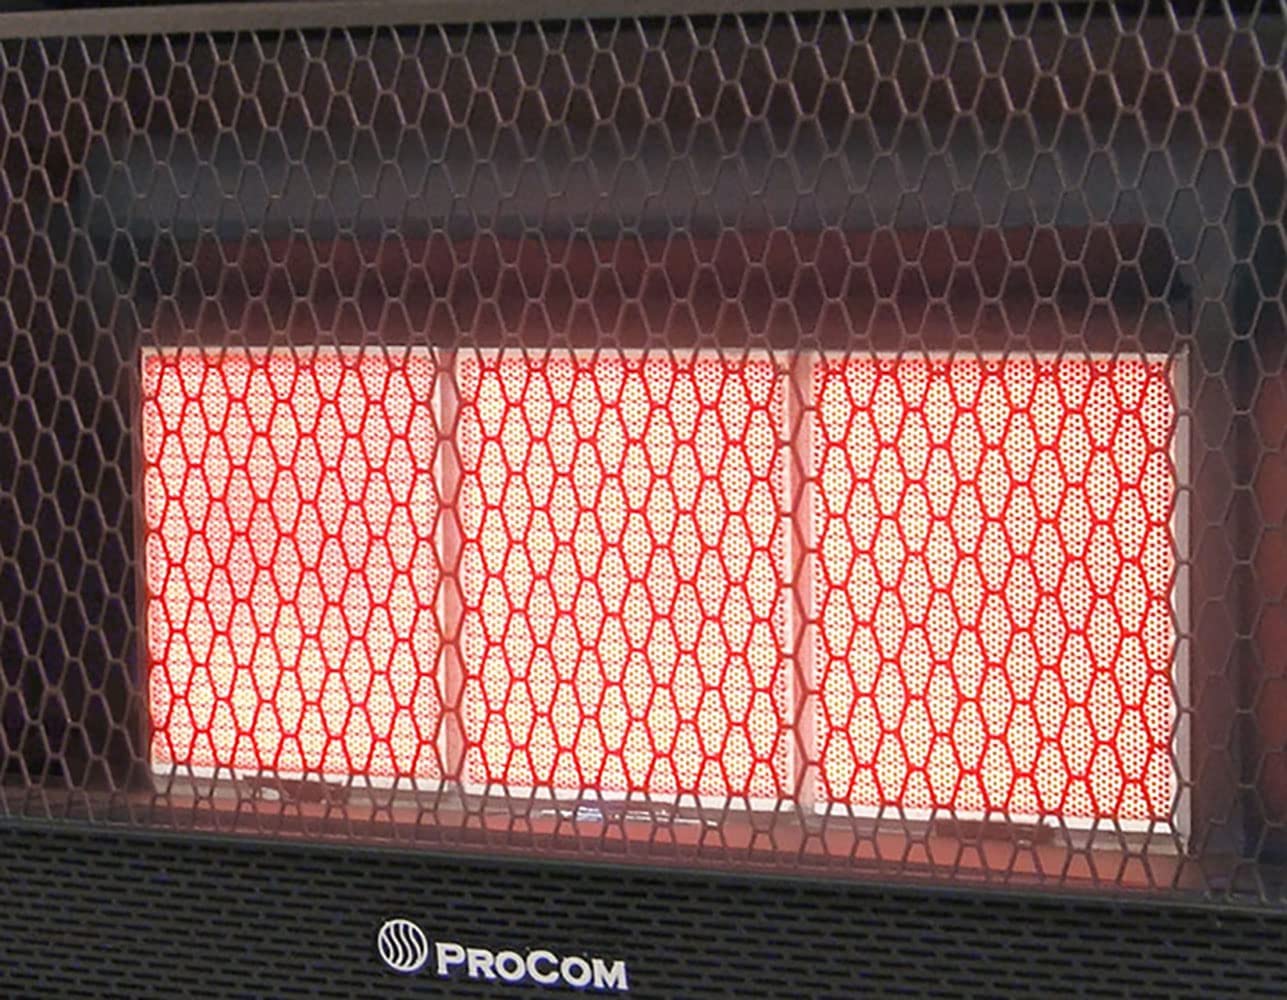 Procom Heating Ml3ptg 28,000 BTU Liquid Propane Infrared Space Heater - White - image 2 of 5